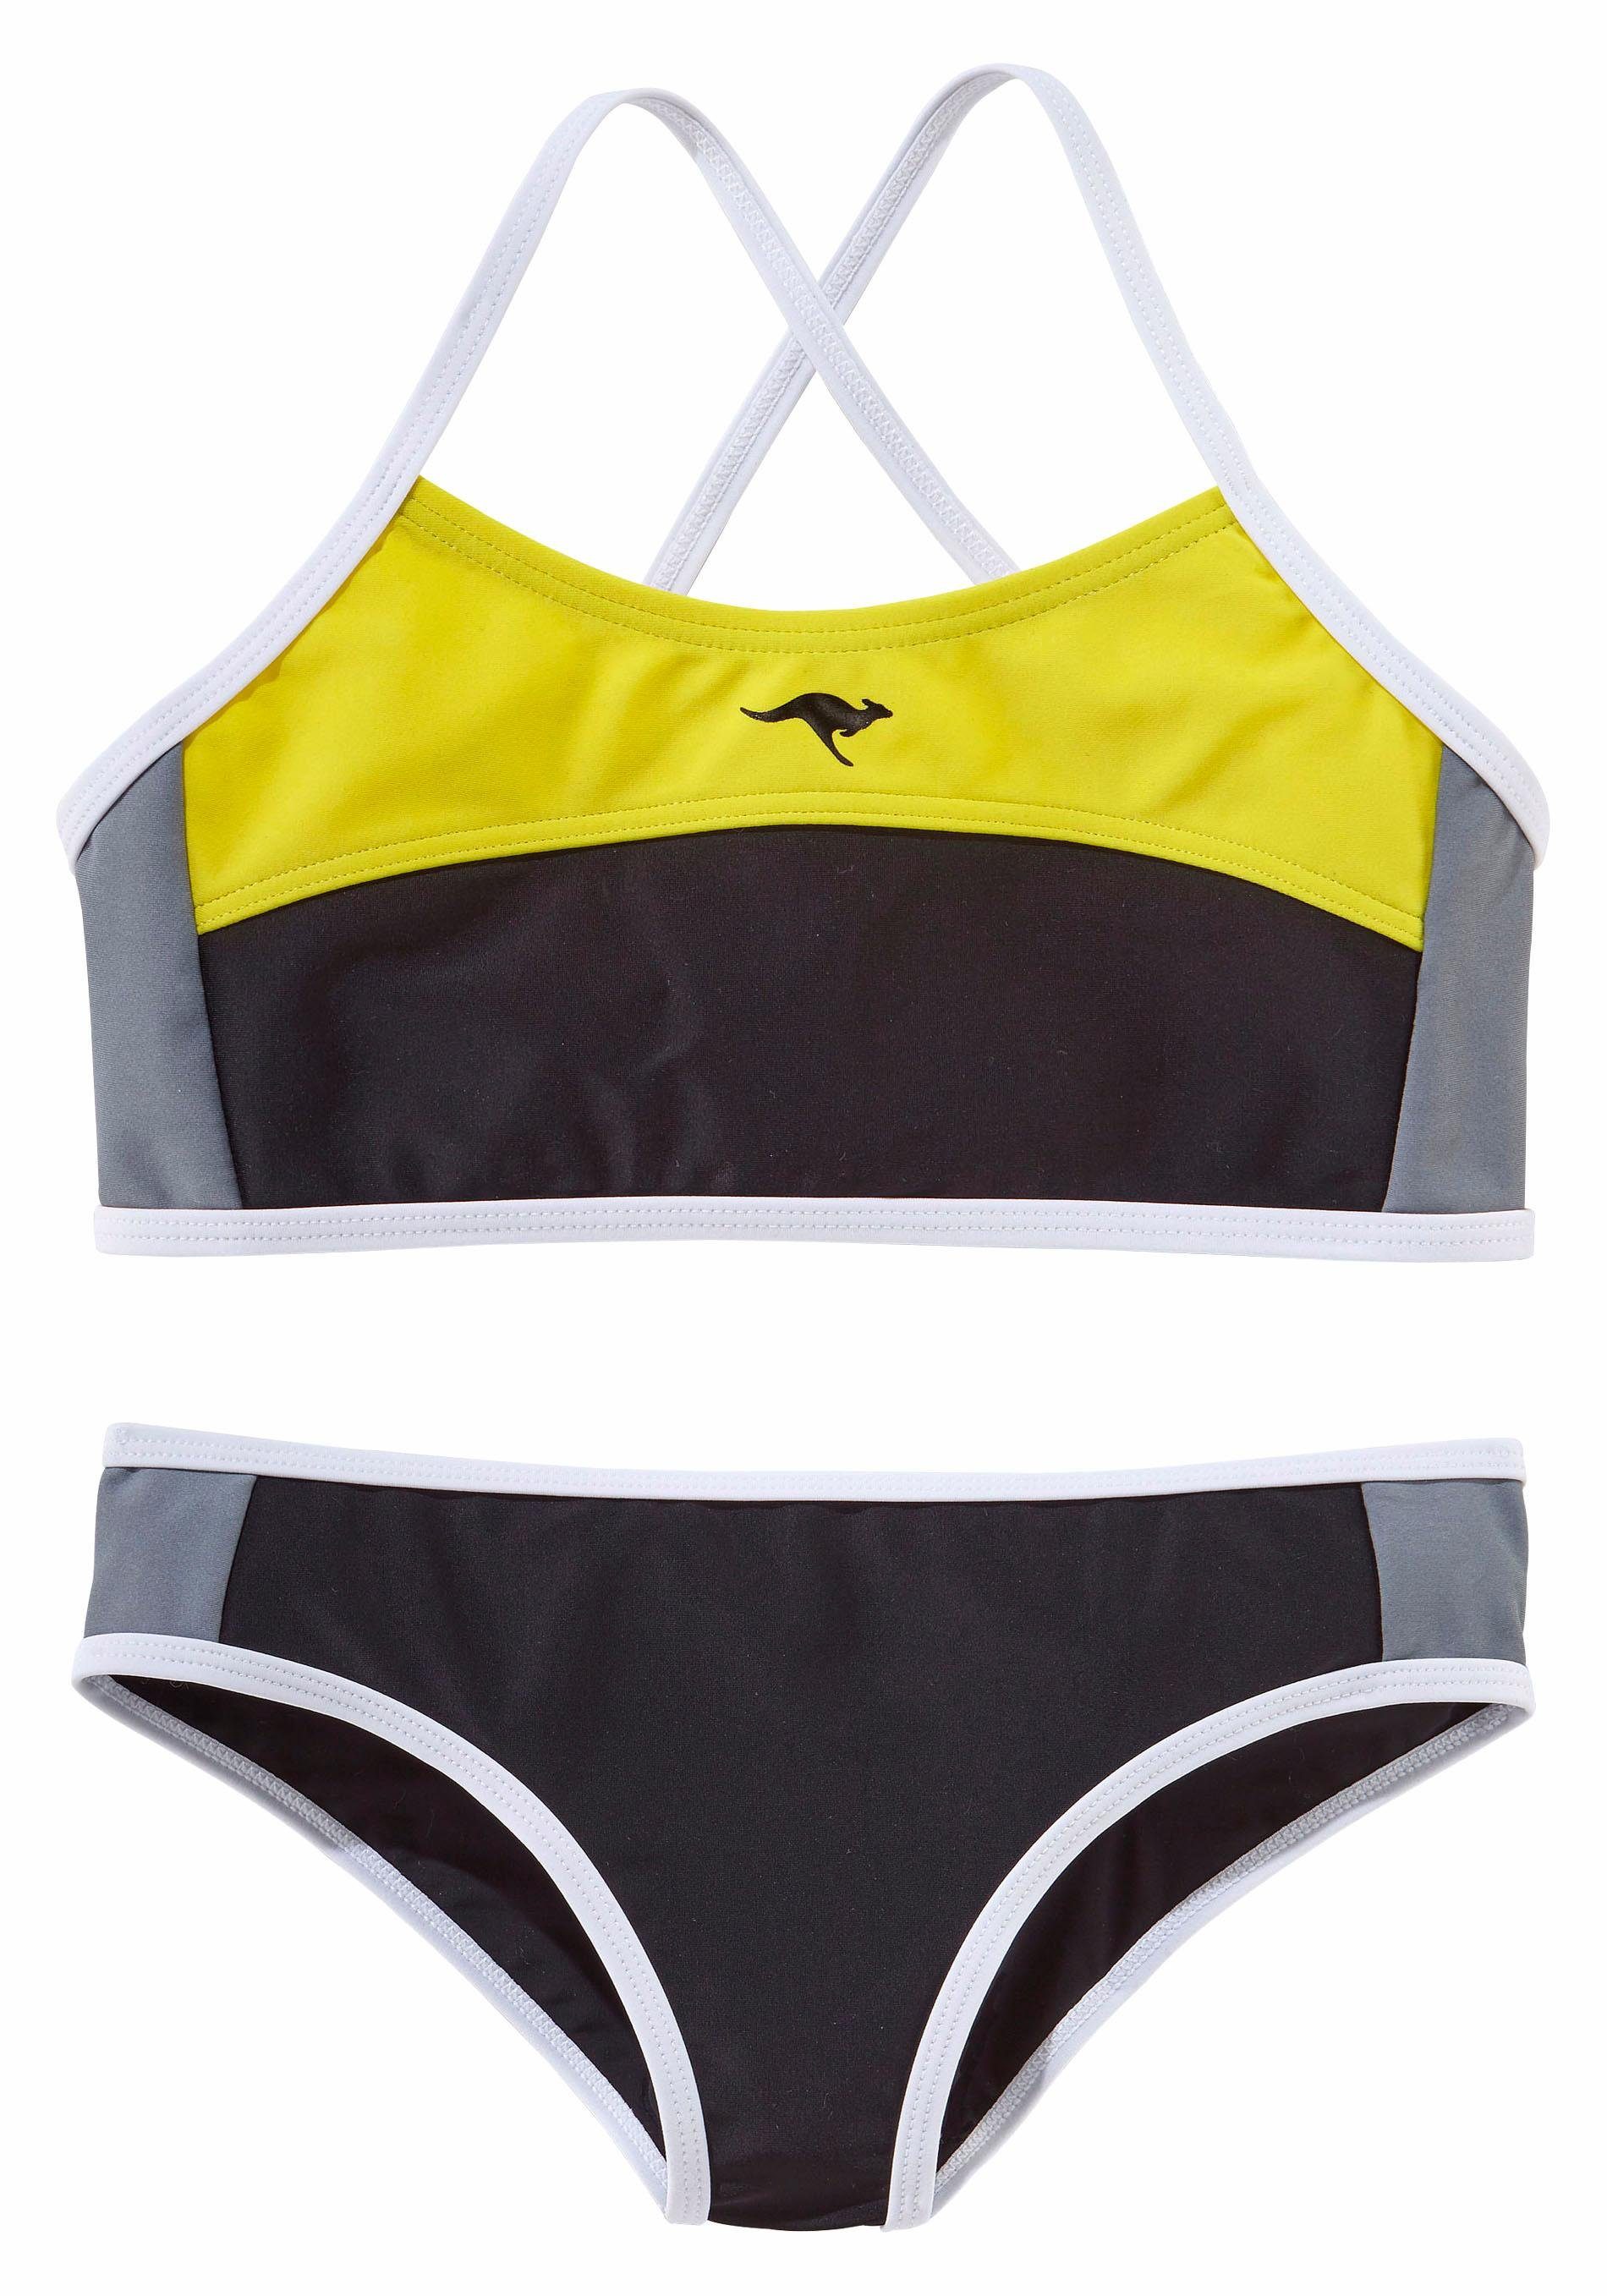 KangaROOS Bustier-Bikini im schwarz-gelb sportlichen Look